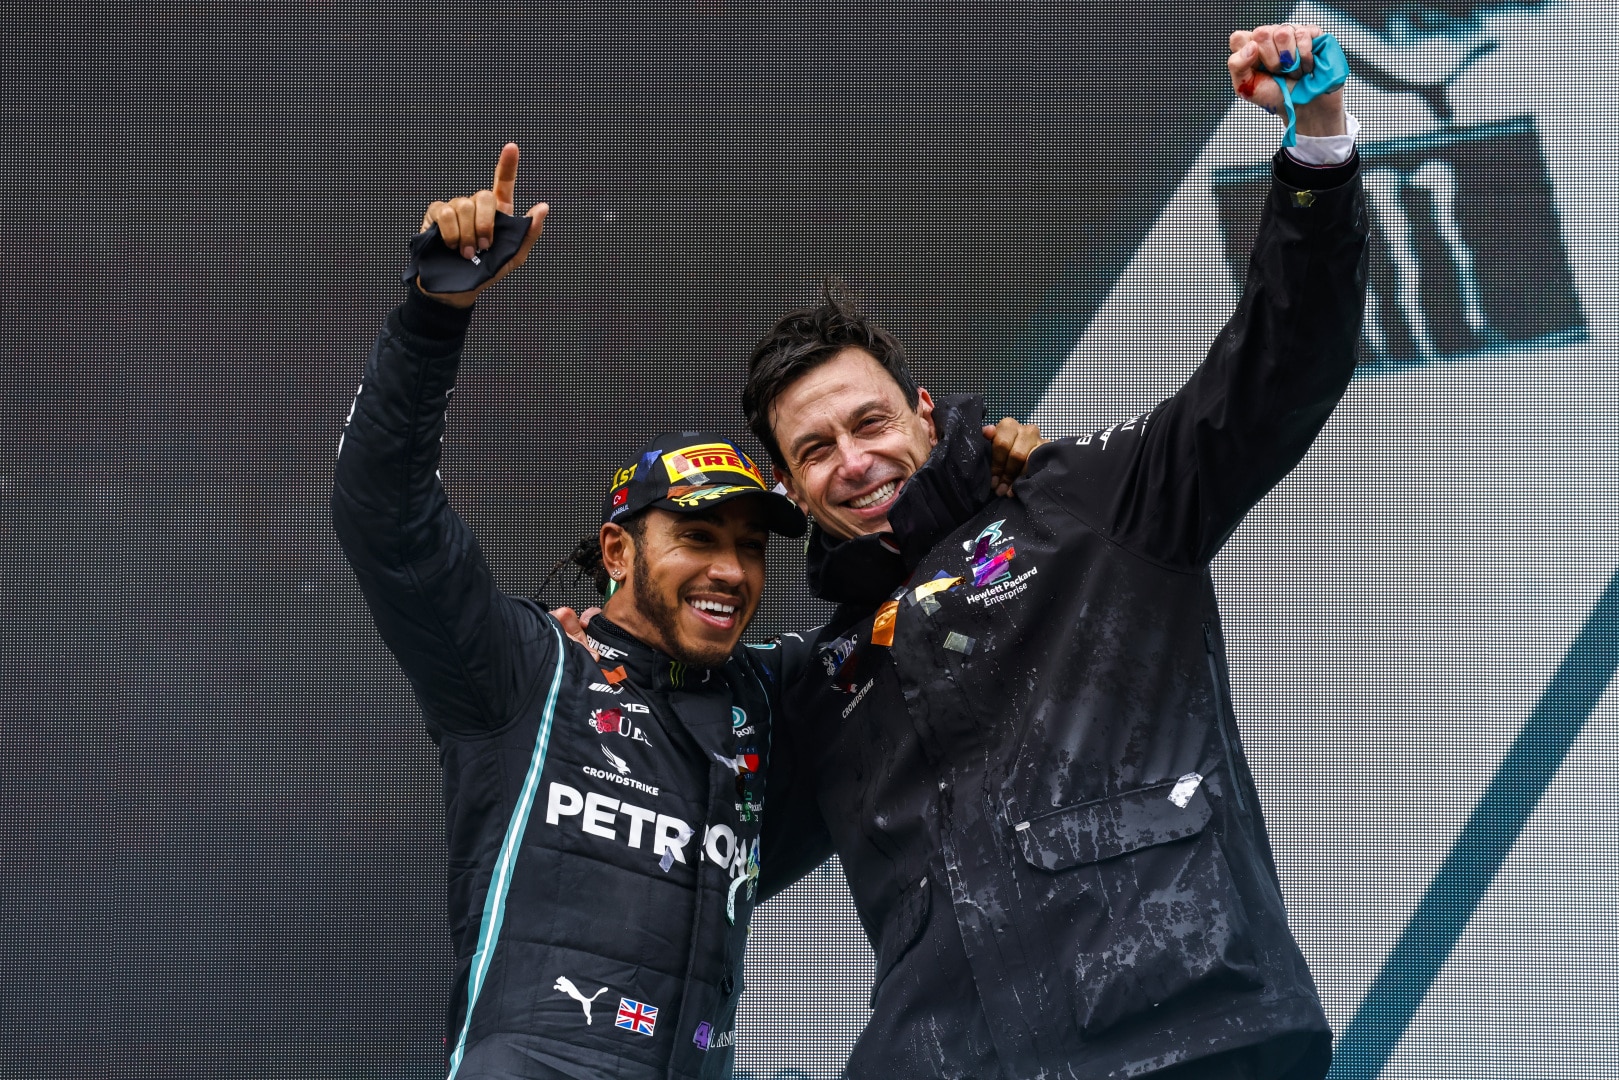 2020 Turkish Grand Prix, Sunday - Lewis Hamilton and Toto Wolff (image courtesy Mercedes-AMG Petronas)